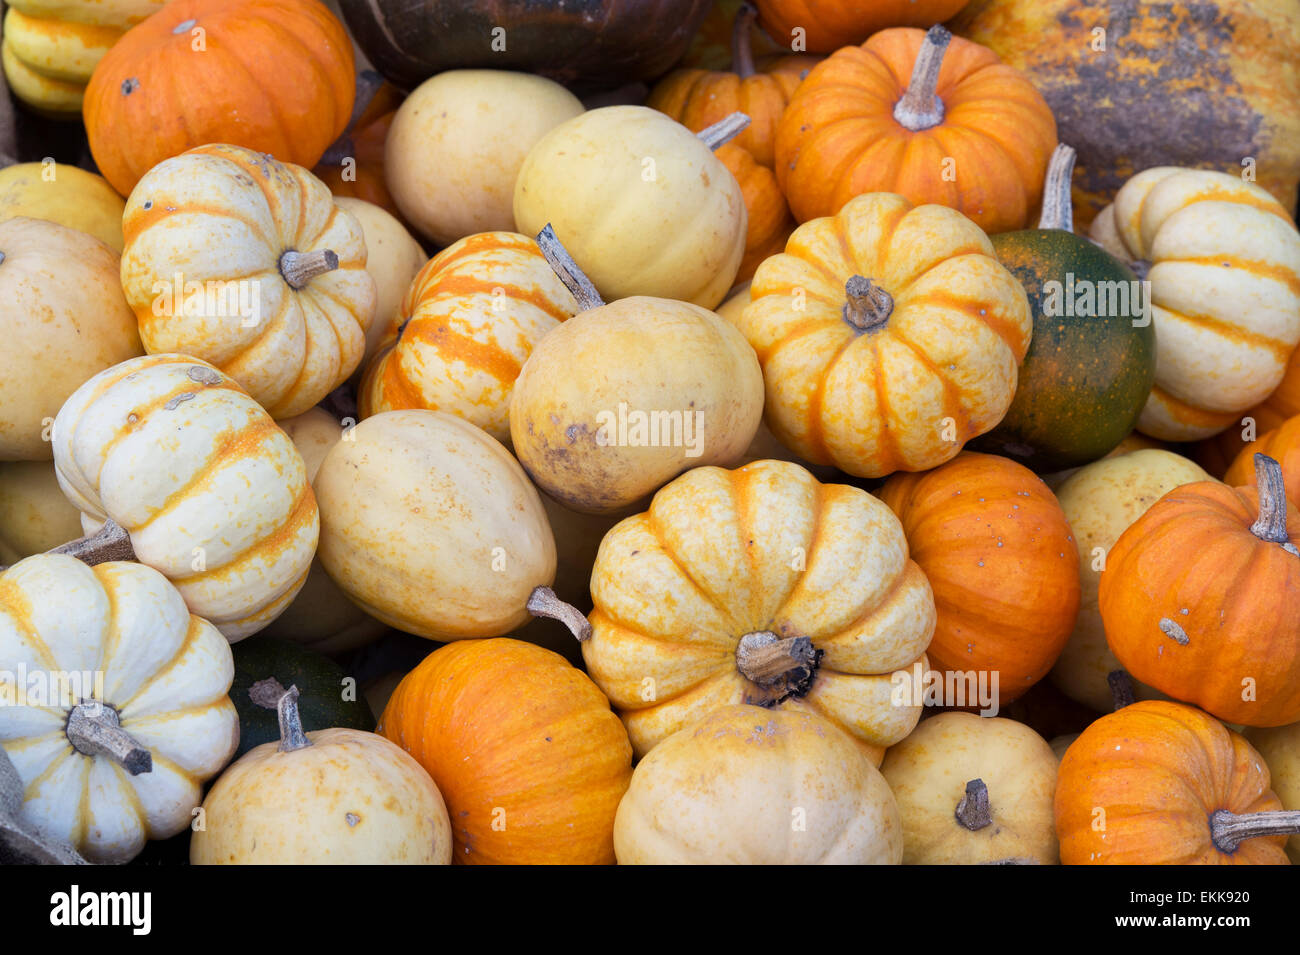 Cucurbita. Pumpkins Squashes and Gourds Stock Photo